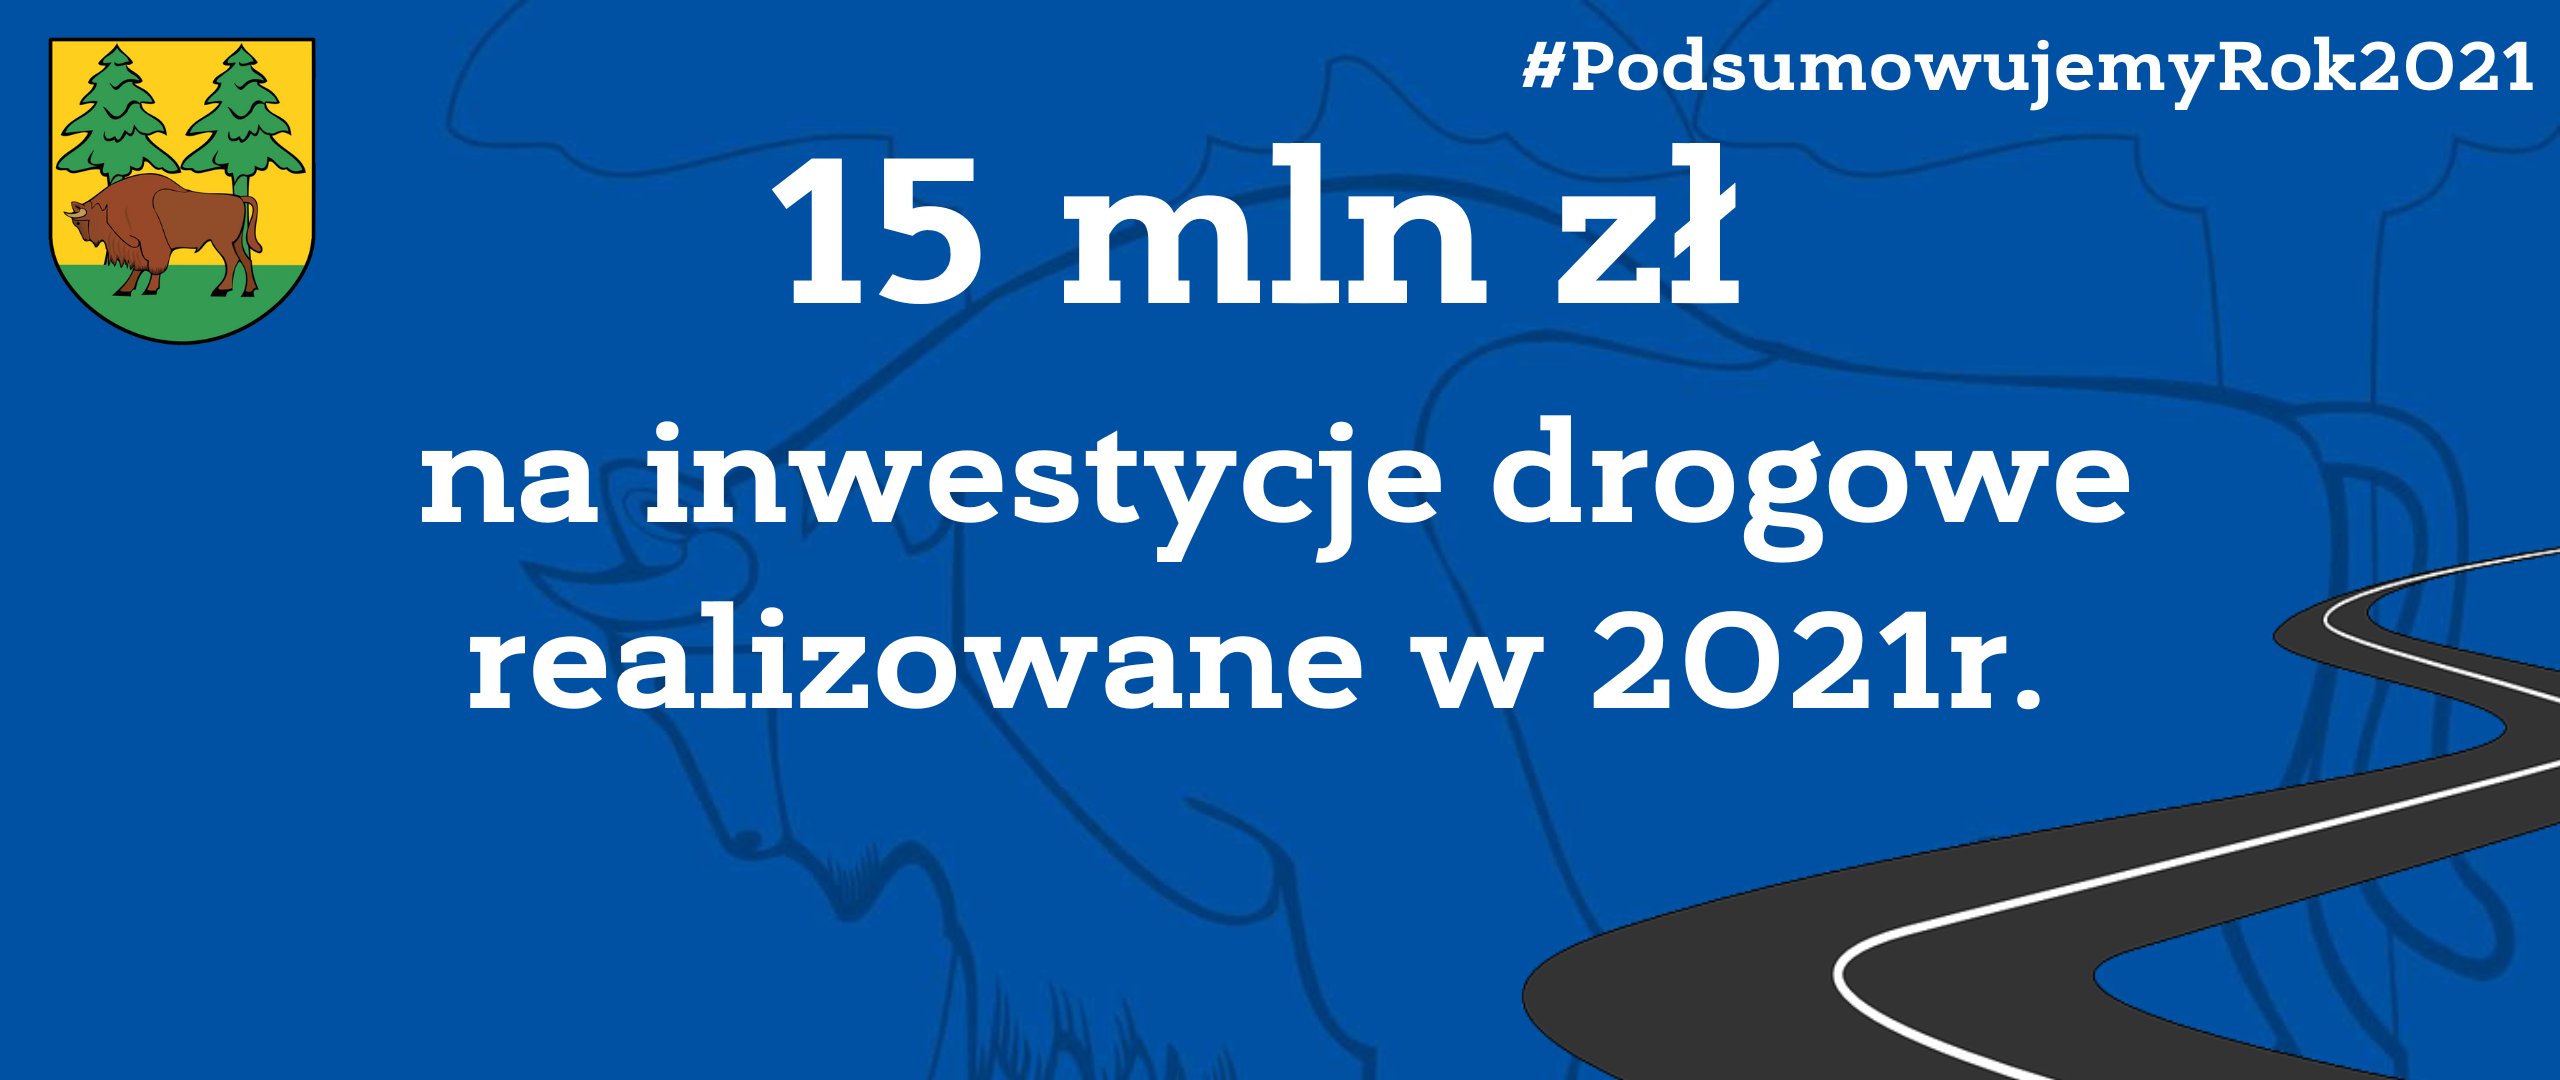 15 mln zł na inwestycje drogowe w 2021 r.